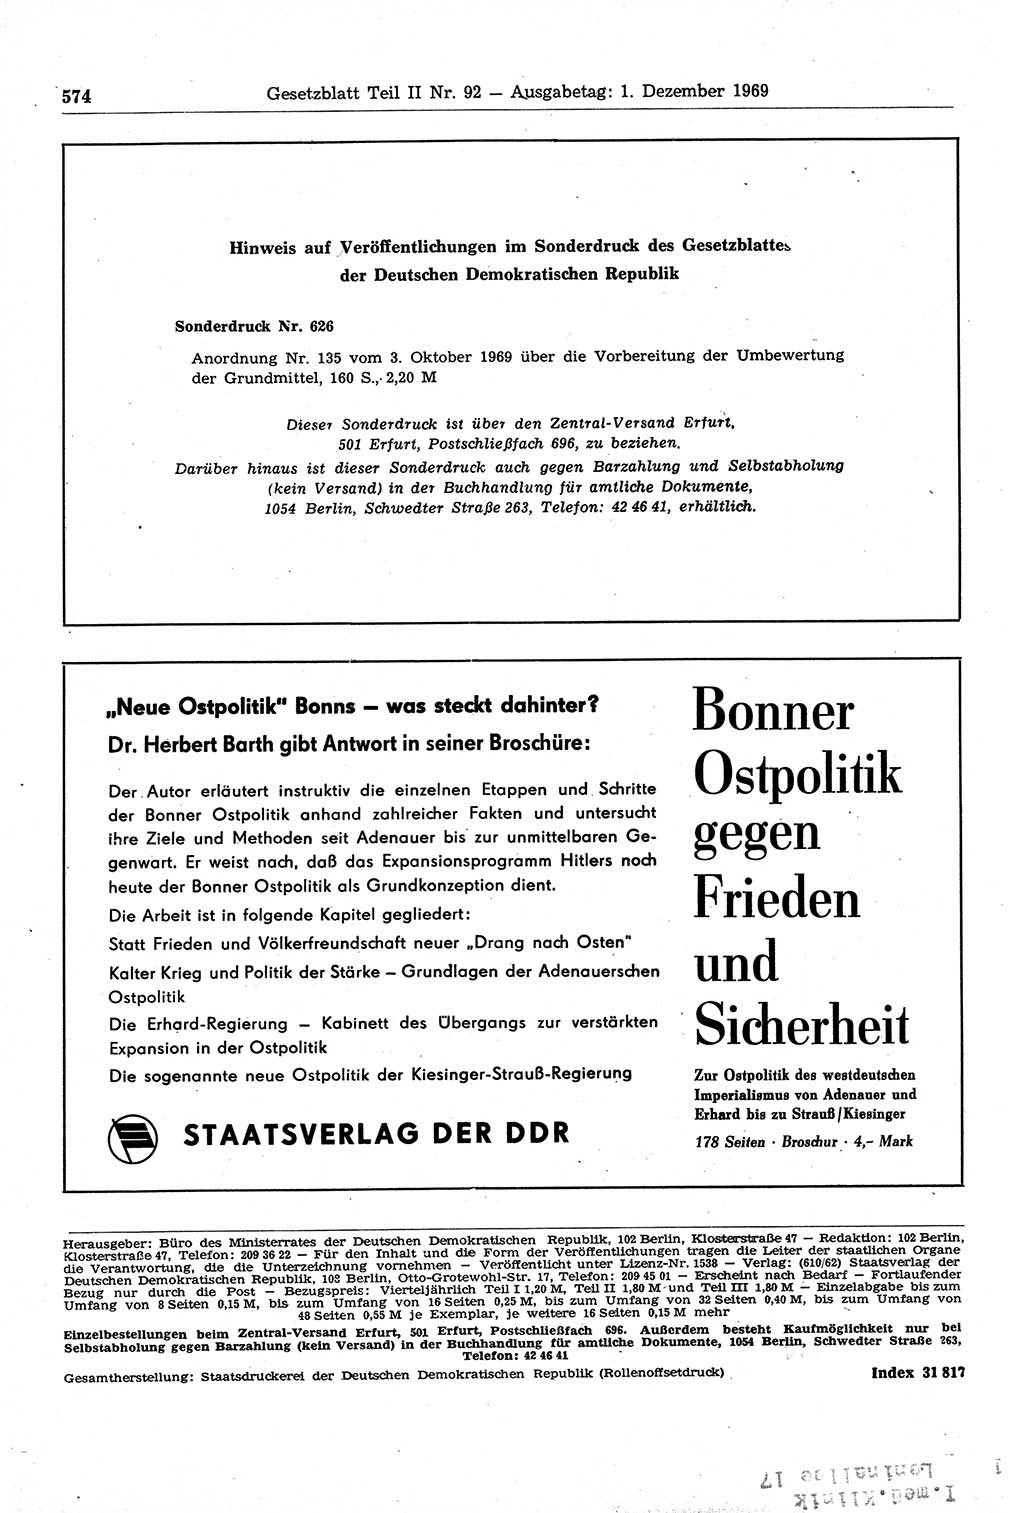 Gesetzblatt (GBl.) der Deutschen Demokratischen Republik (DDR) Teil ⅠⅠ 1969, Seite 574 (GBl. DDR ⅠⅠ 1969, S. 574)